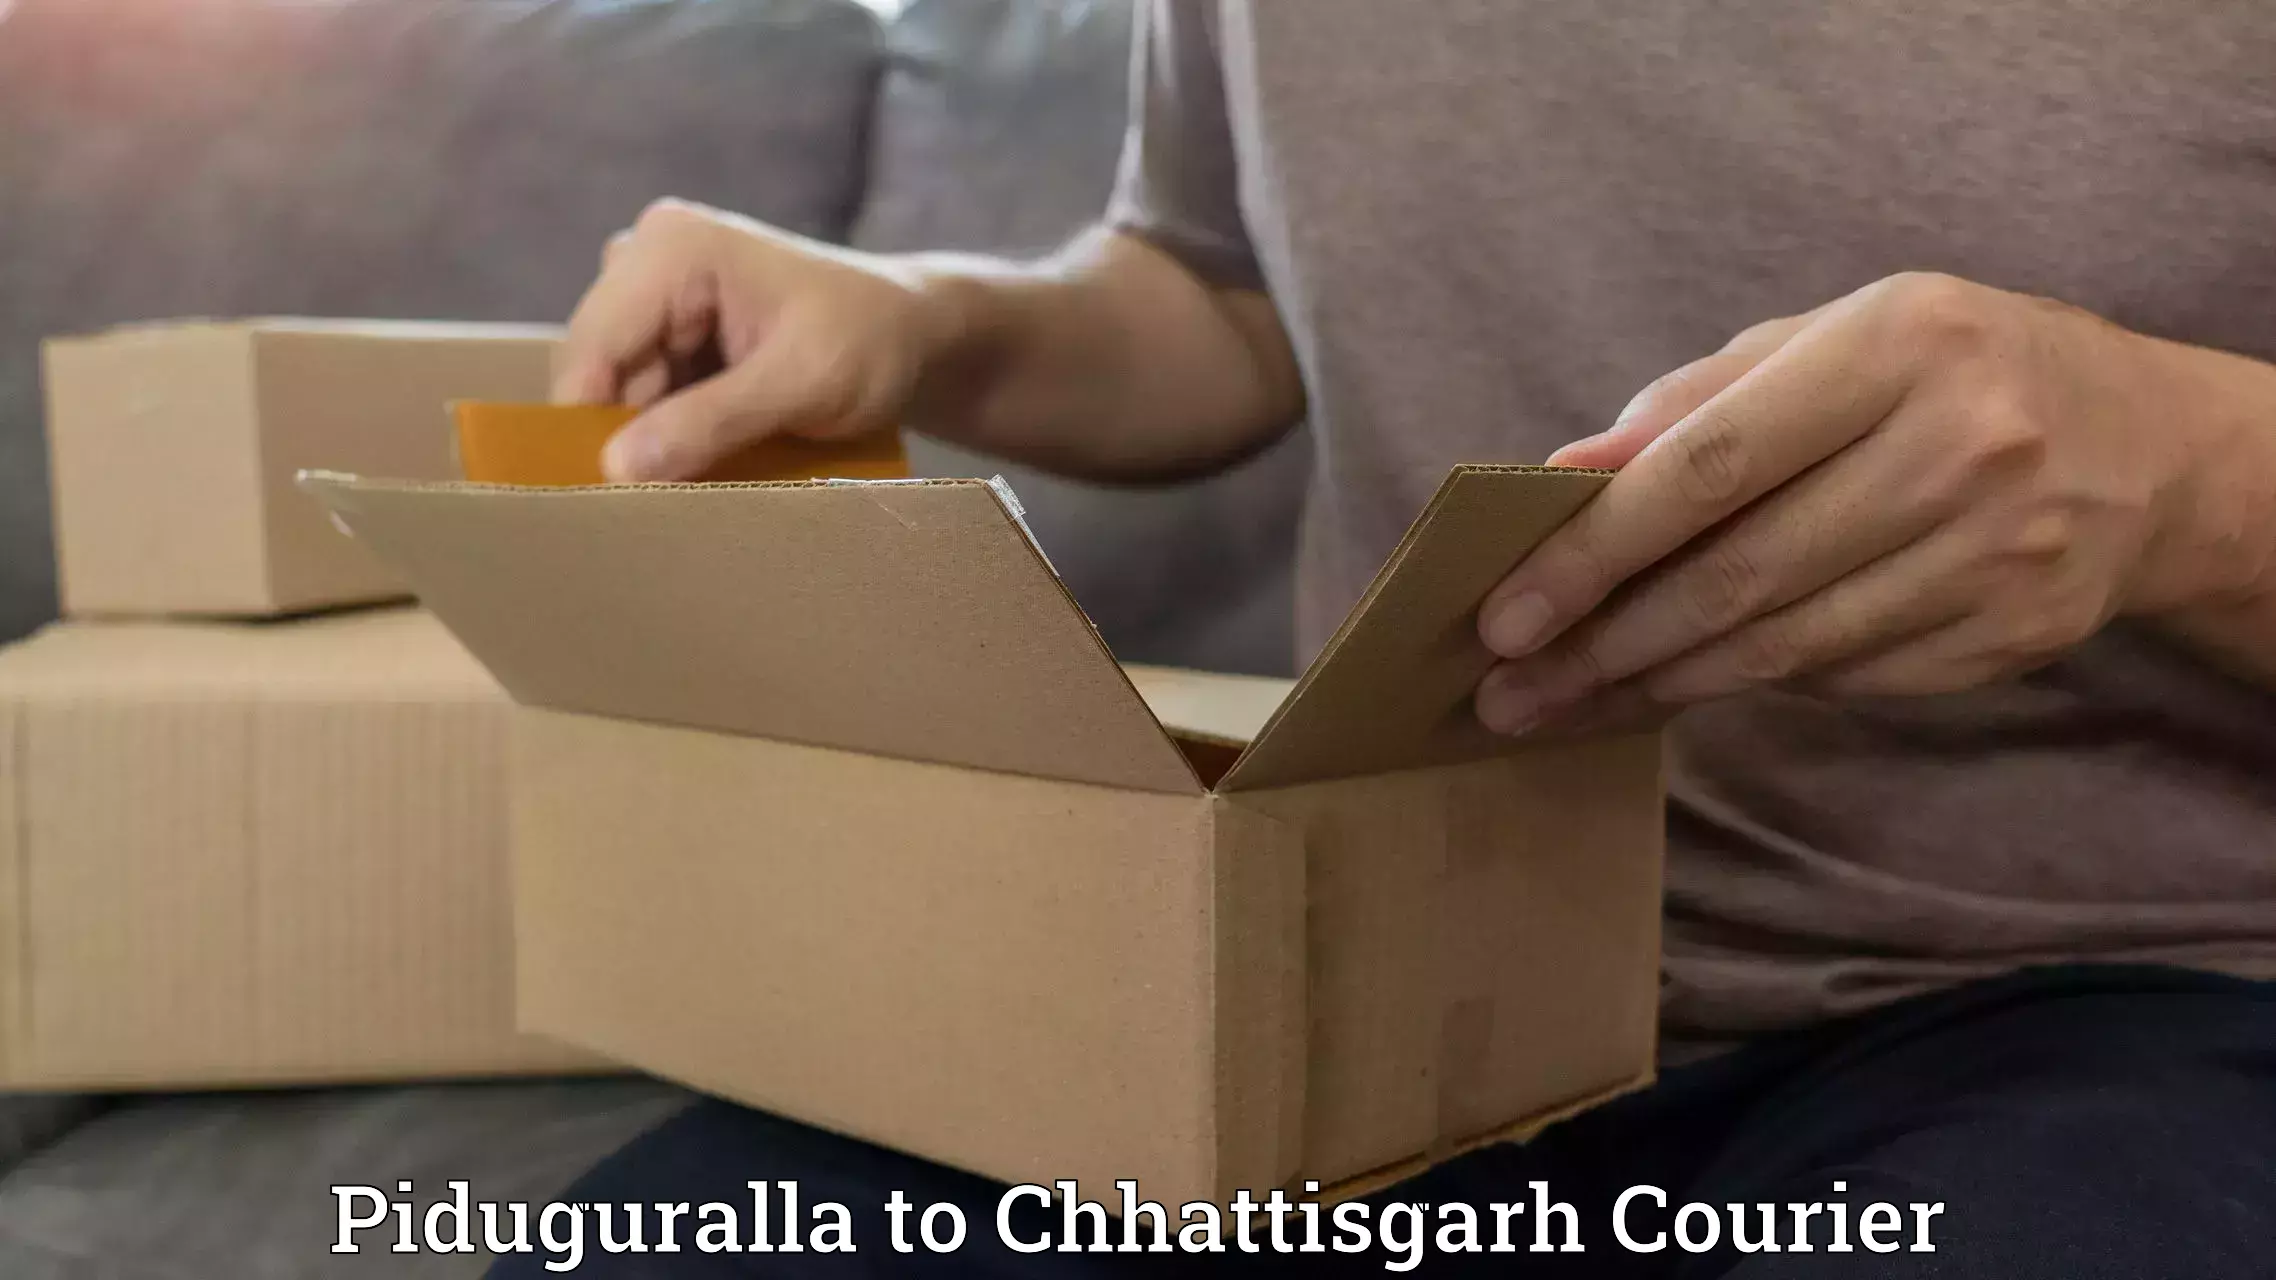 Cargo delivery service Piduguralla to Raigarh Chhattisgarh